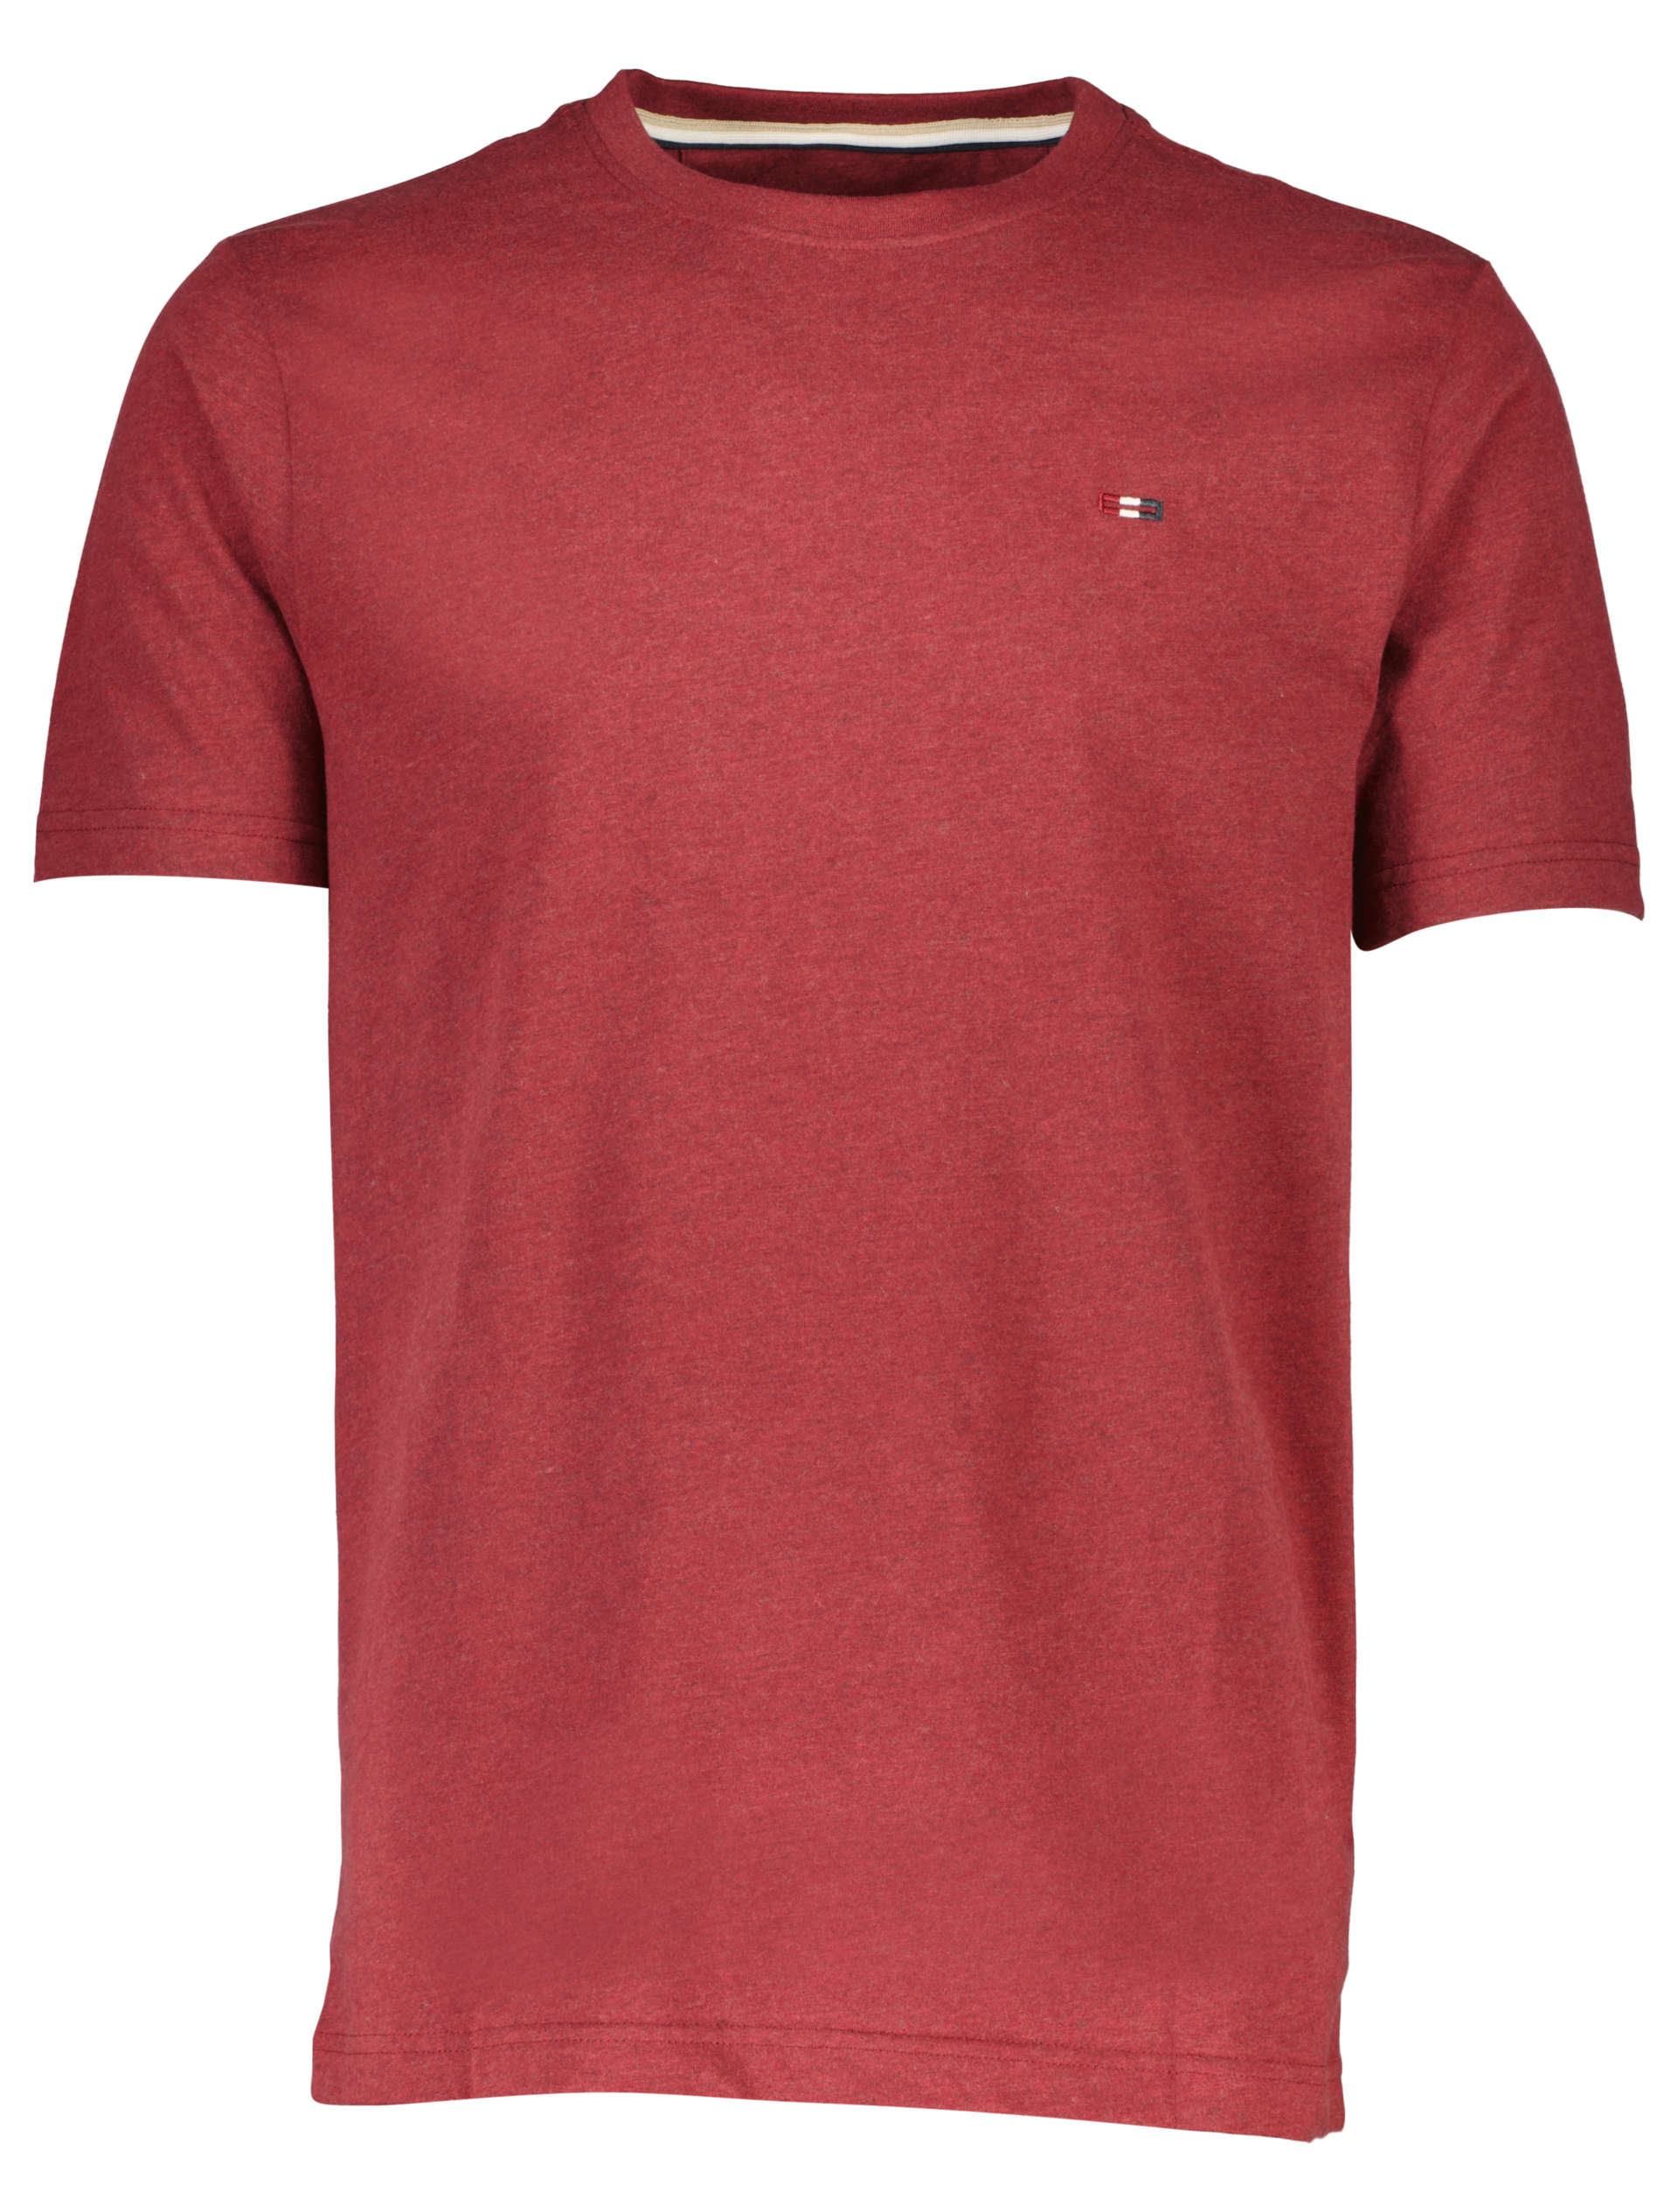 Bison T-shirt rød / dk red mel